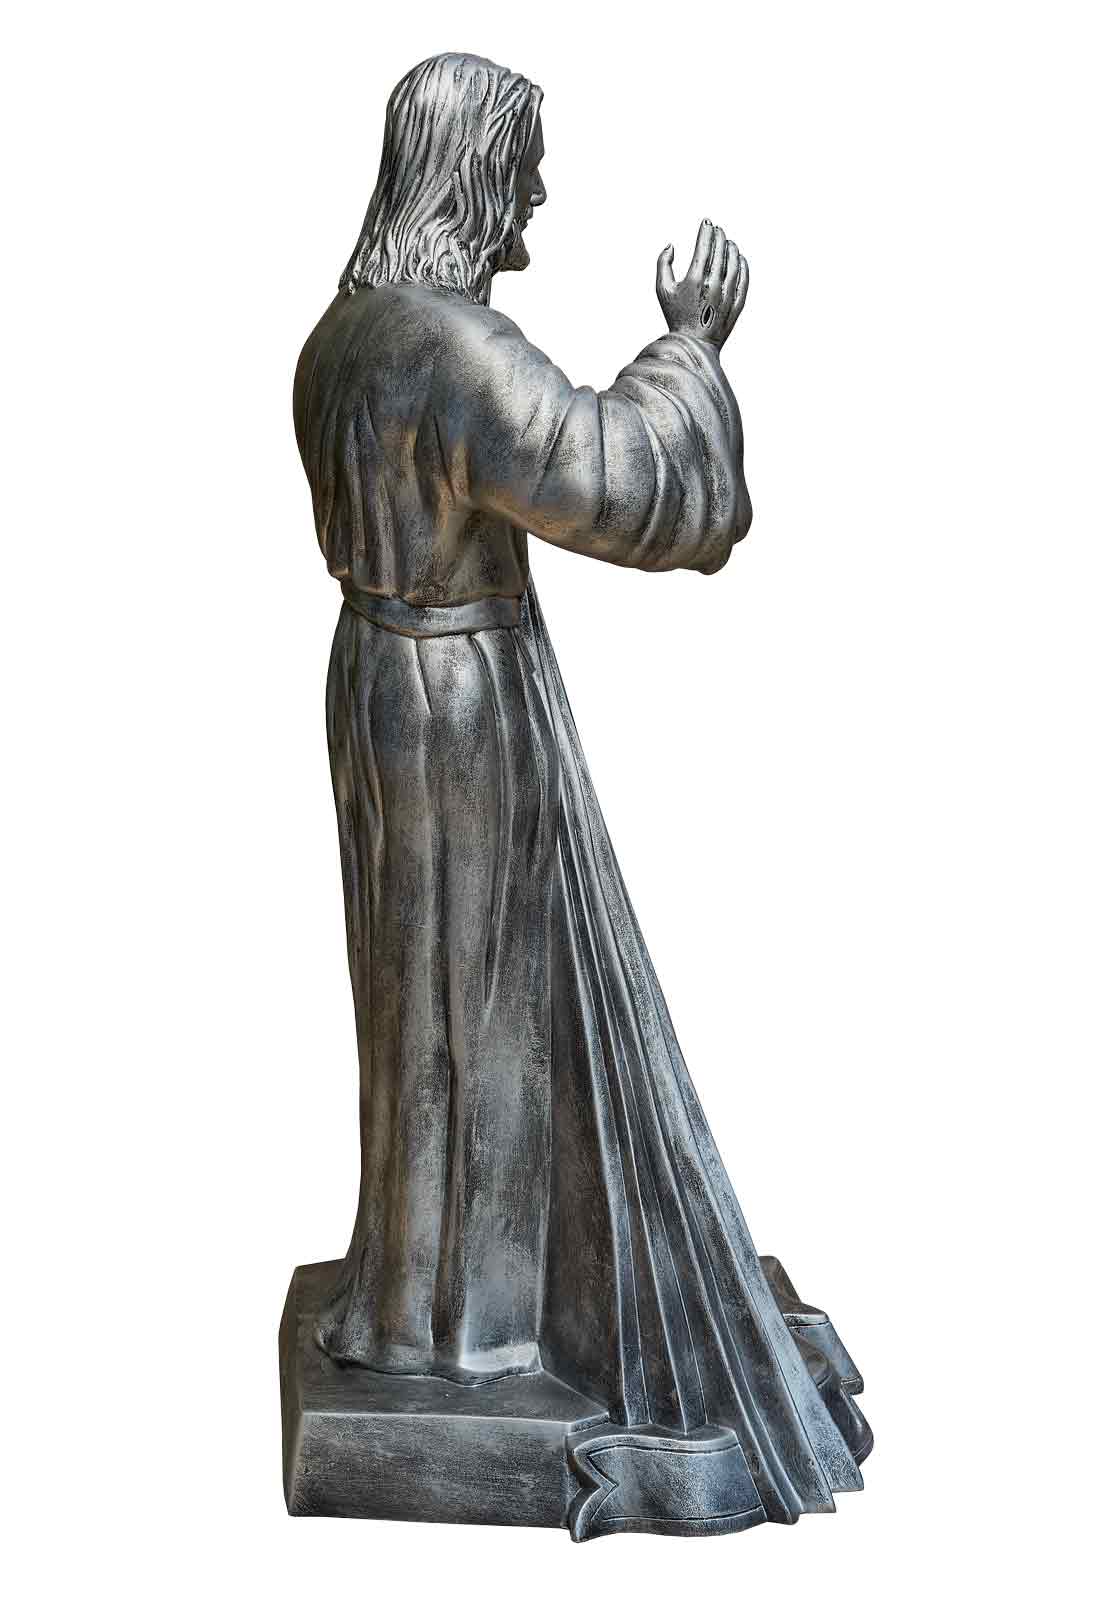 Jezus Miłosierny - Jezu Ufam Tobie - Figura nagrobkowa - 90 cm - R 170